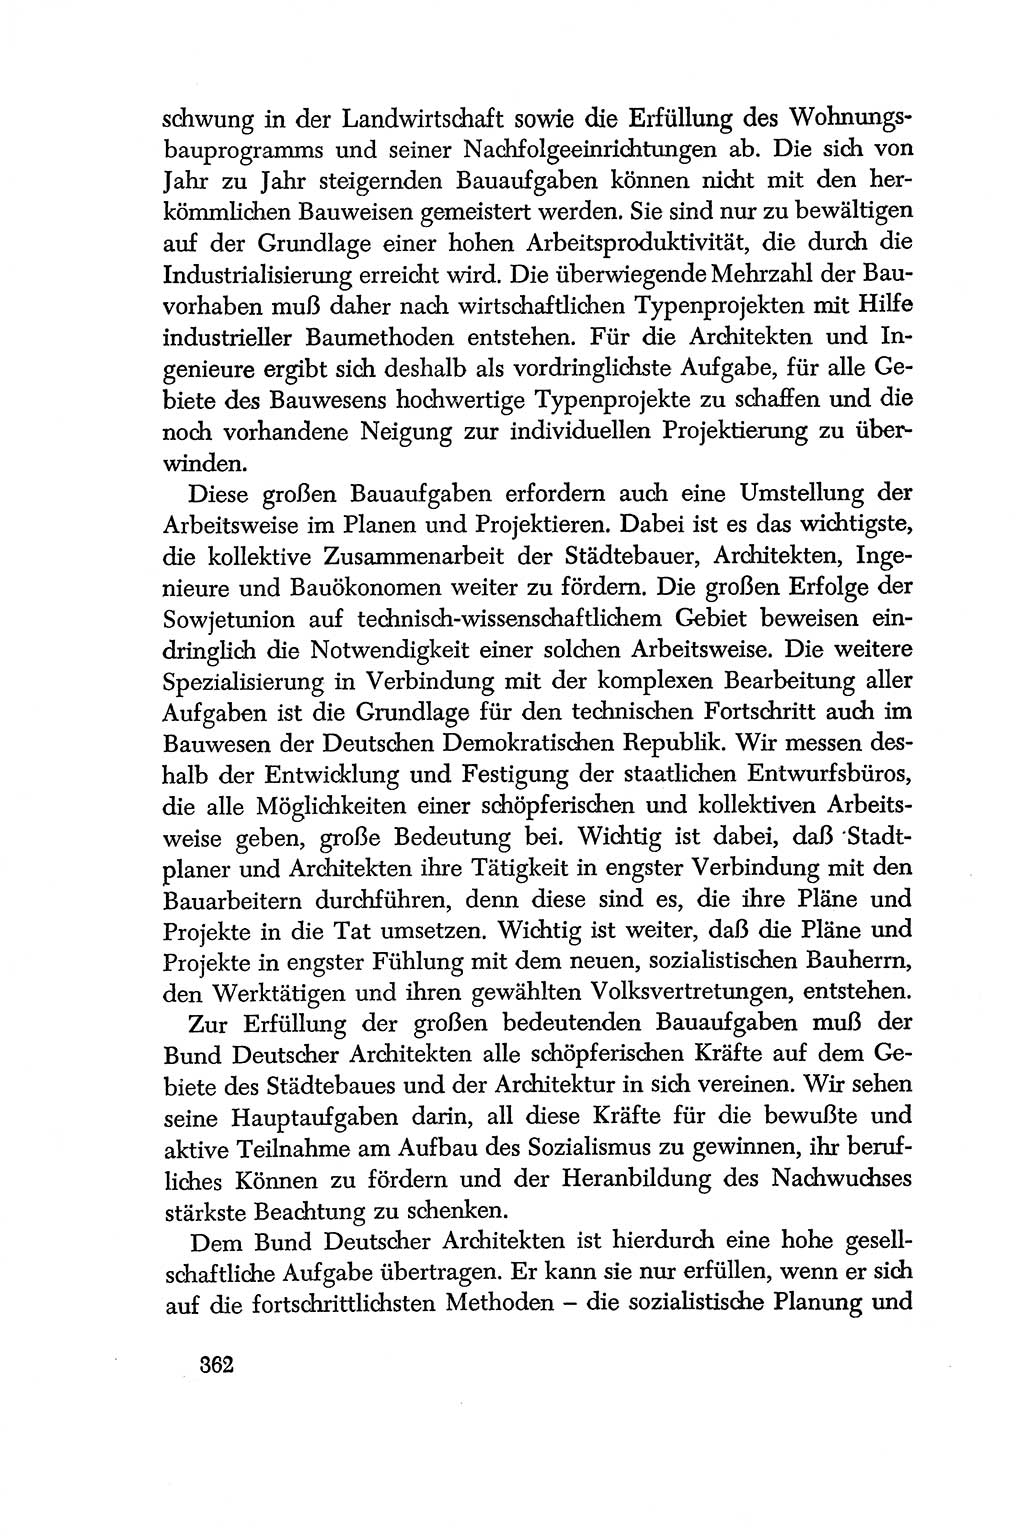 Dokumente der Sozialistischen Einheitspartei Deutschlands (SED) [Deutsche Demokratische Republik (DDR)] 1956-1957, Seite 362 (Dok. SED DDR 1956-1957, S. 362)